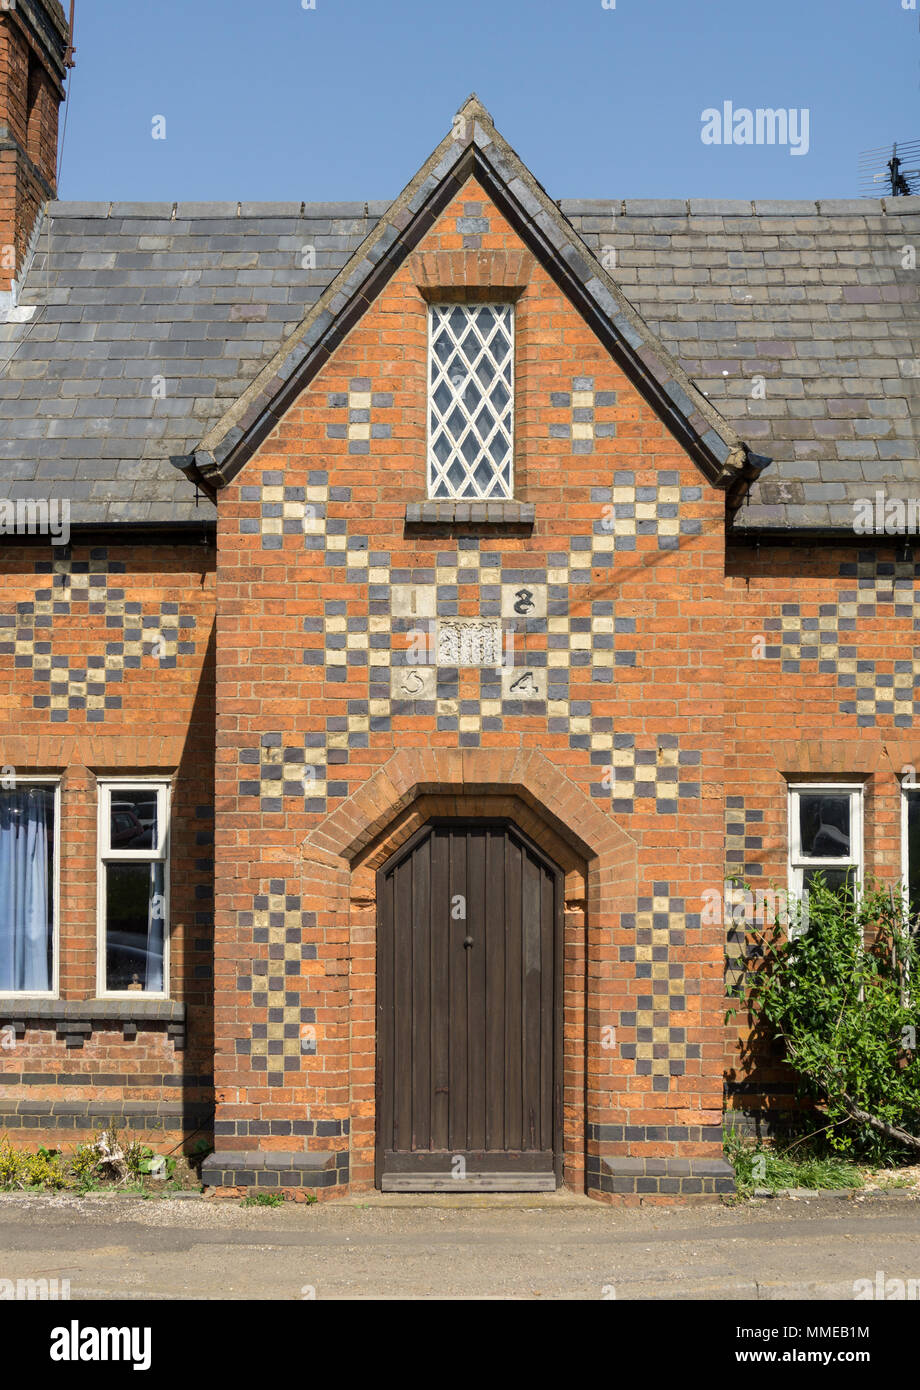 Chambre avec des motifs sur les murs de brique ; Lamport village, Northamptonshire, Angleterre Banque D'Images